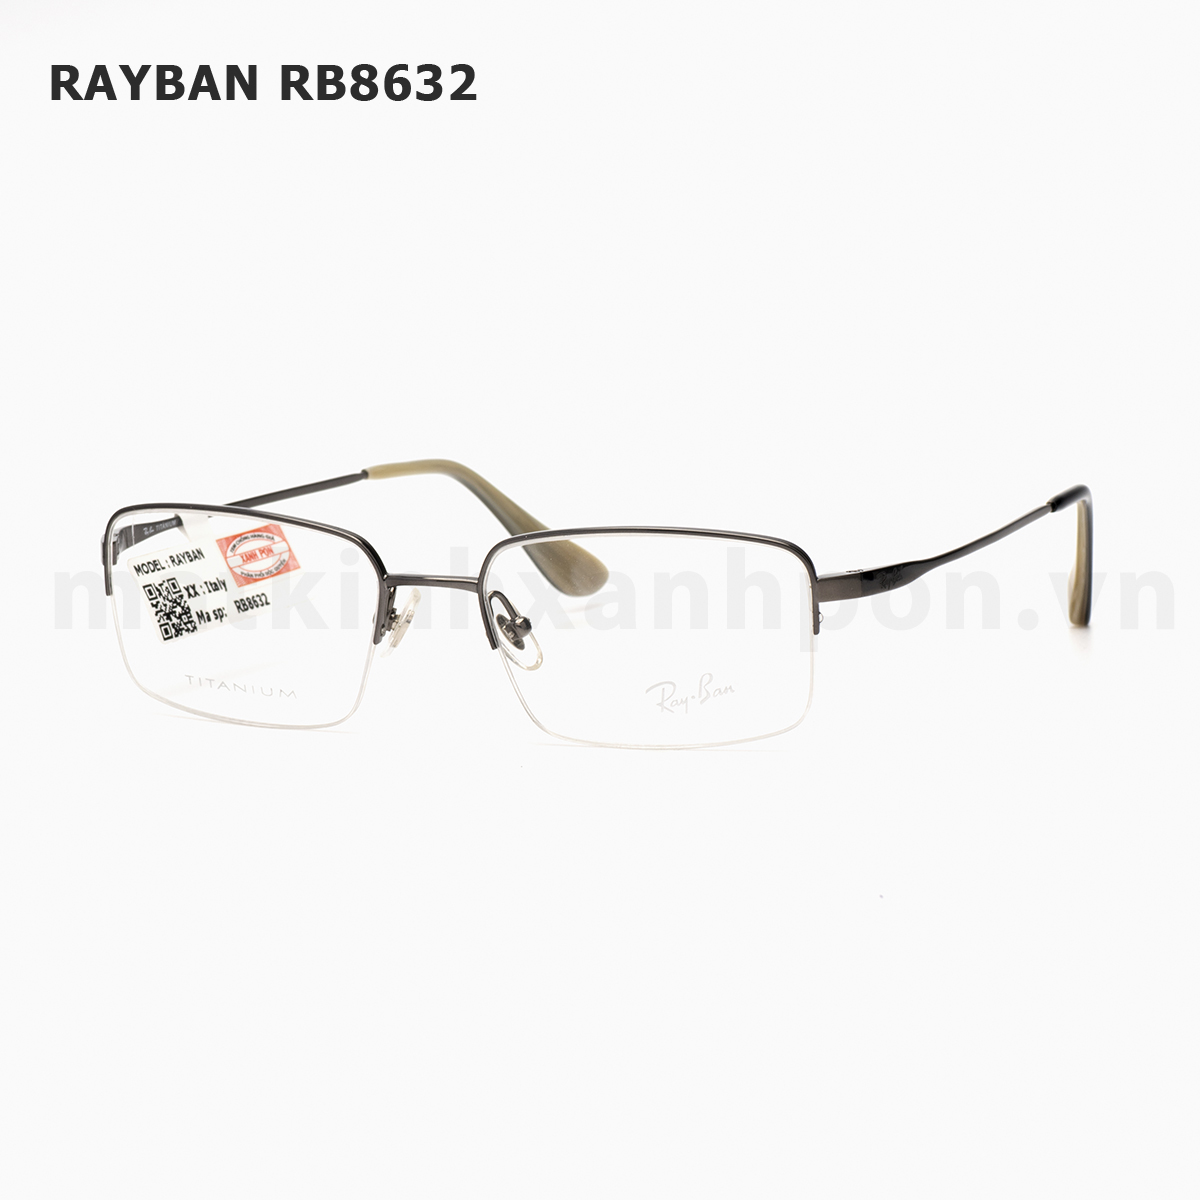 Rayban RB8632